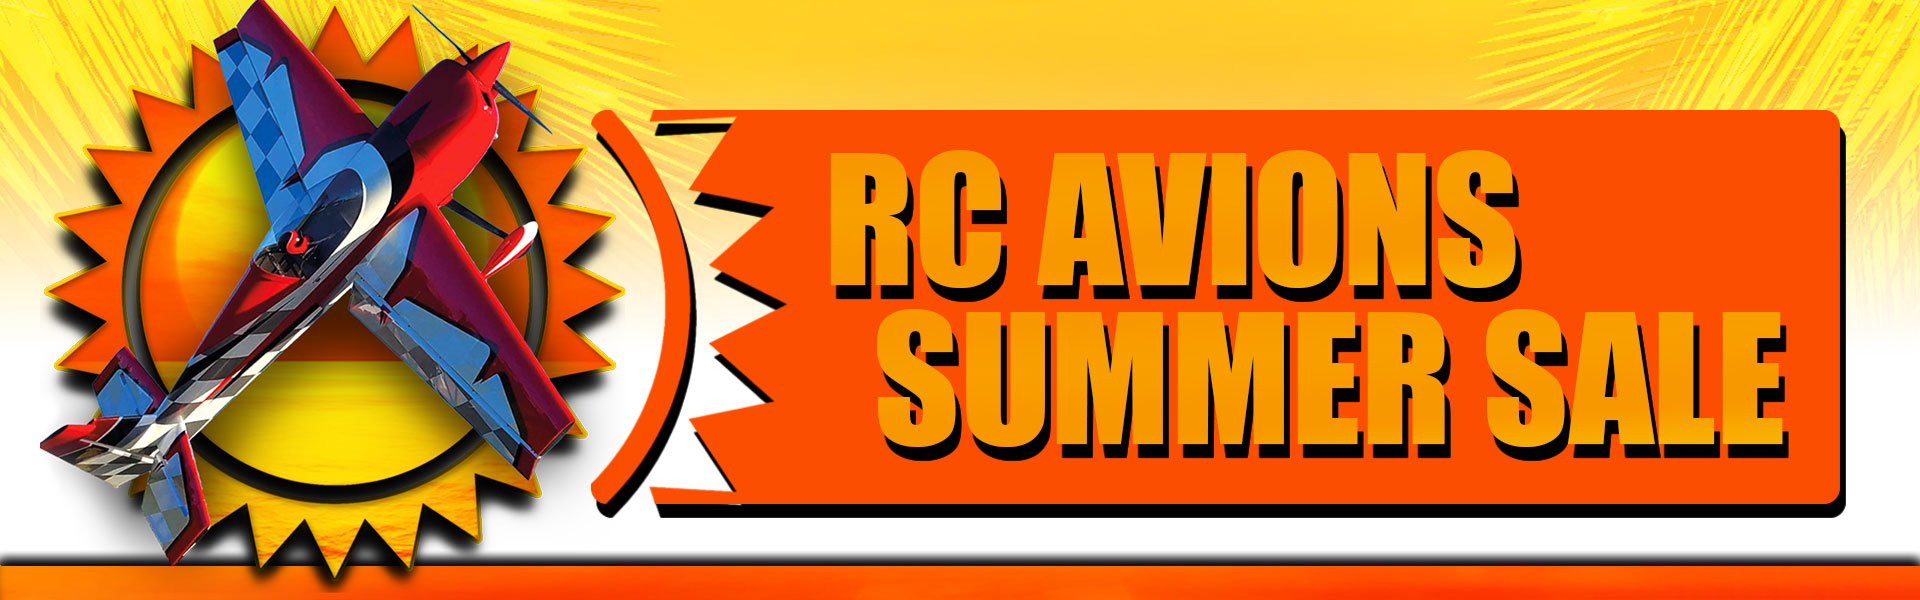 RC_AVIONS_SummerSaleBanner1920x600DetailFR